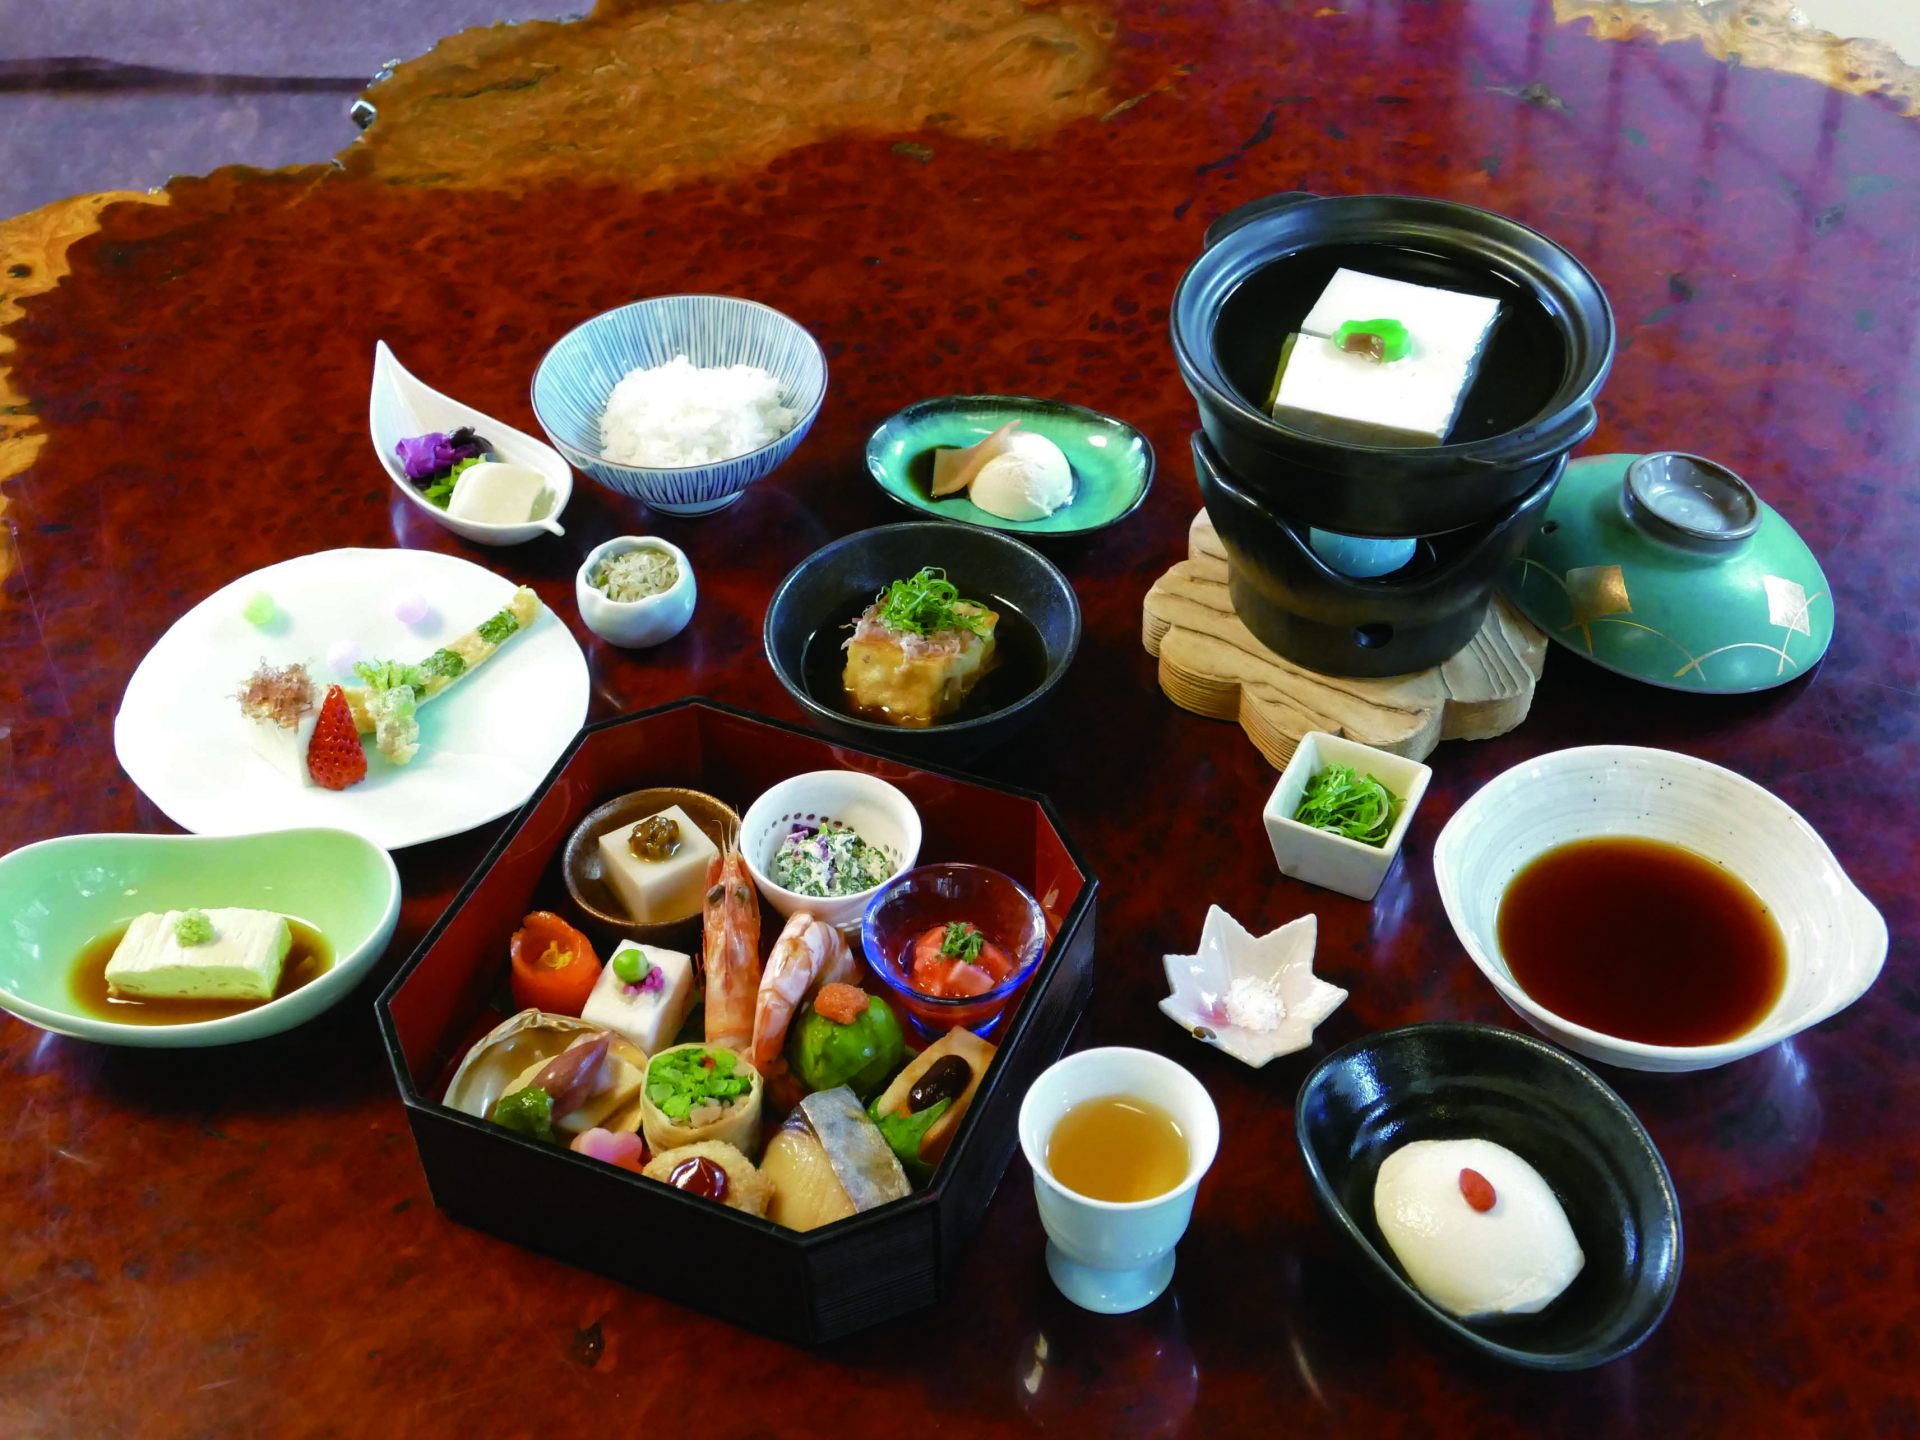 「松籟」(5,060円)が人気。老舗豆腐店「森嘉」の嵯峨豆腐料理や季節の逸品で、京の美味と四季を堪能して。